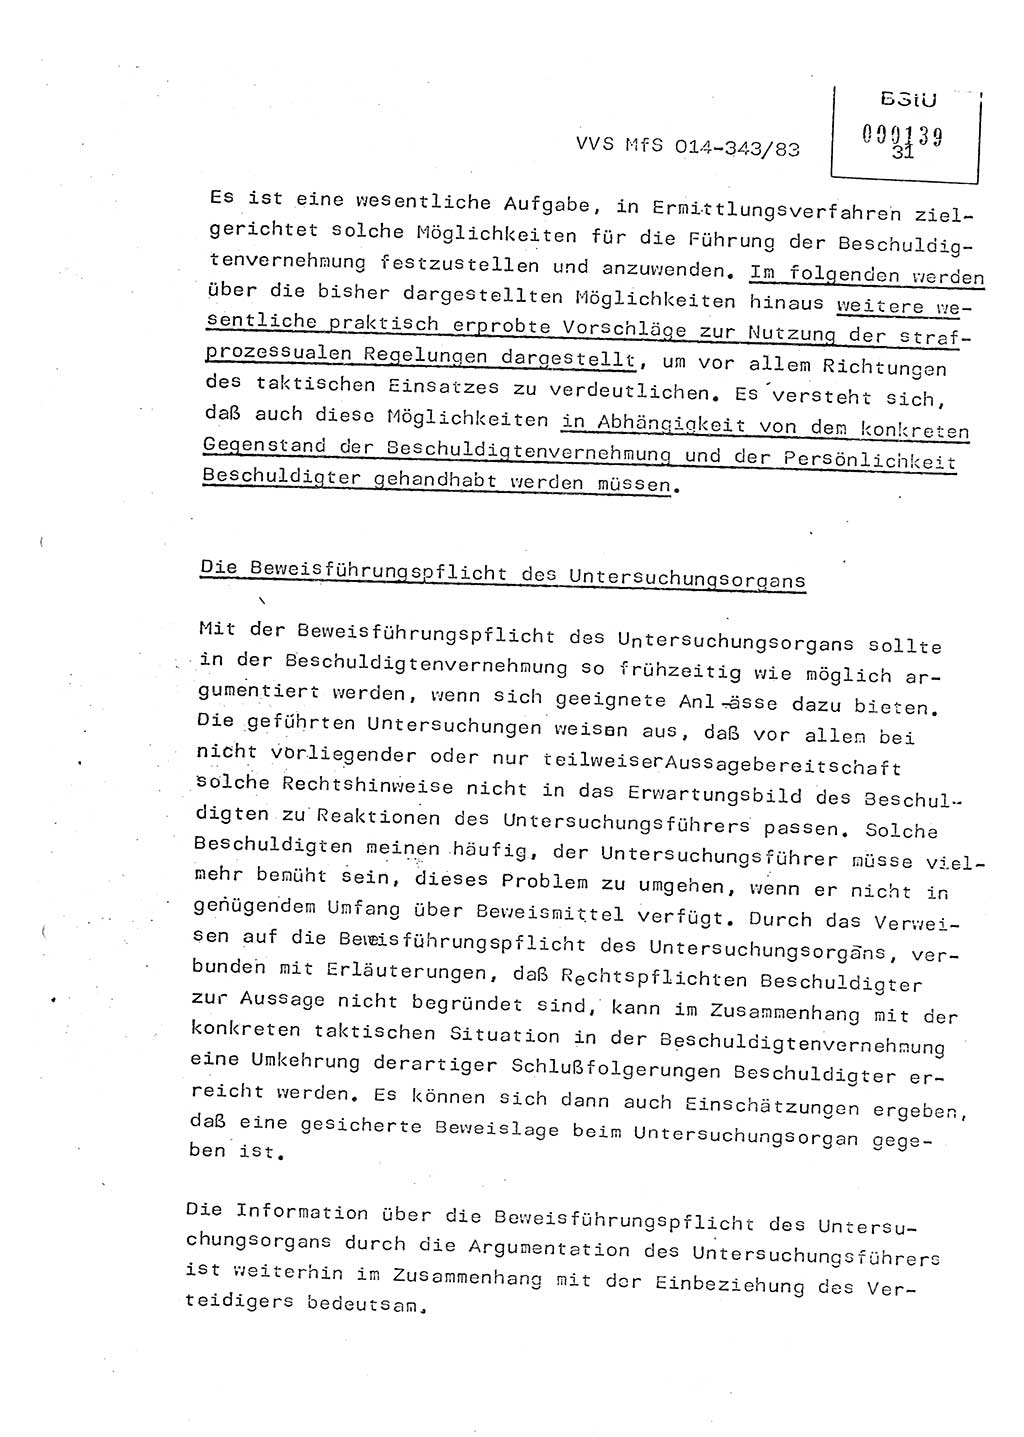 Lektion Ministerium für Staatssicherheit (MfS) [Deutsche Demokratische Republik (DDR)], Hauptabteilung (HA) Ⅸ, Vertrauliche Verschlußsache (VVS) o014-343/83, Berlin 1983, Seite 31 (Lekt. MfS DDR HA Ⅸ VVS o014-343/83 1983, S. 31)